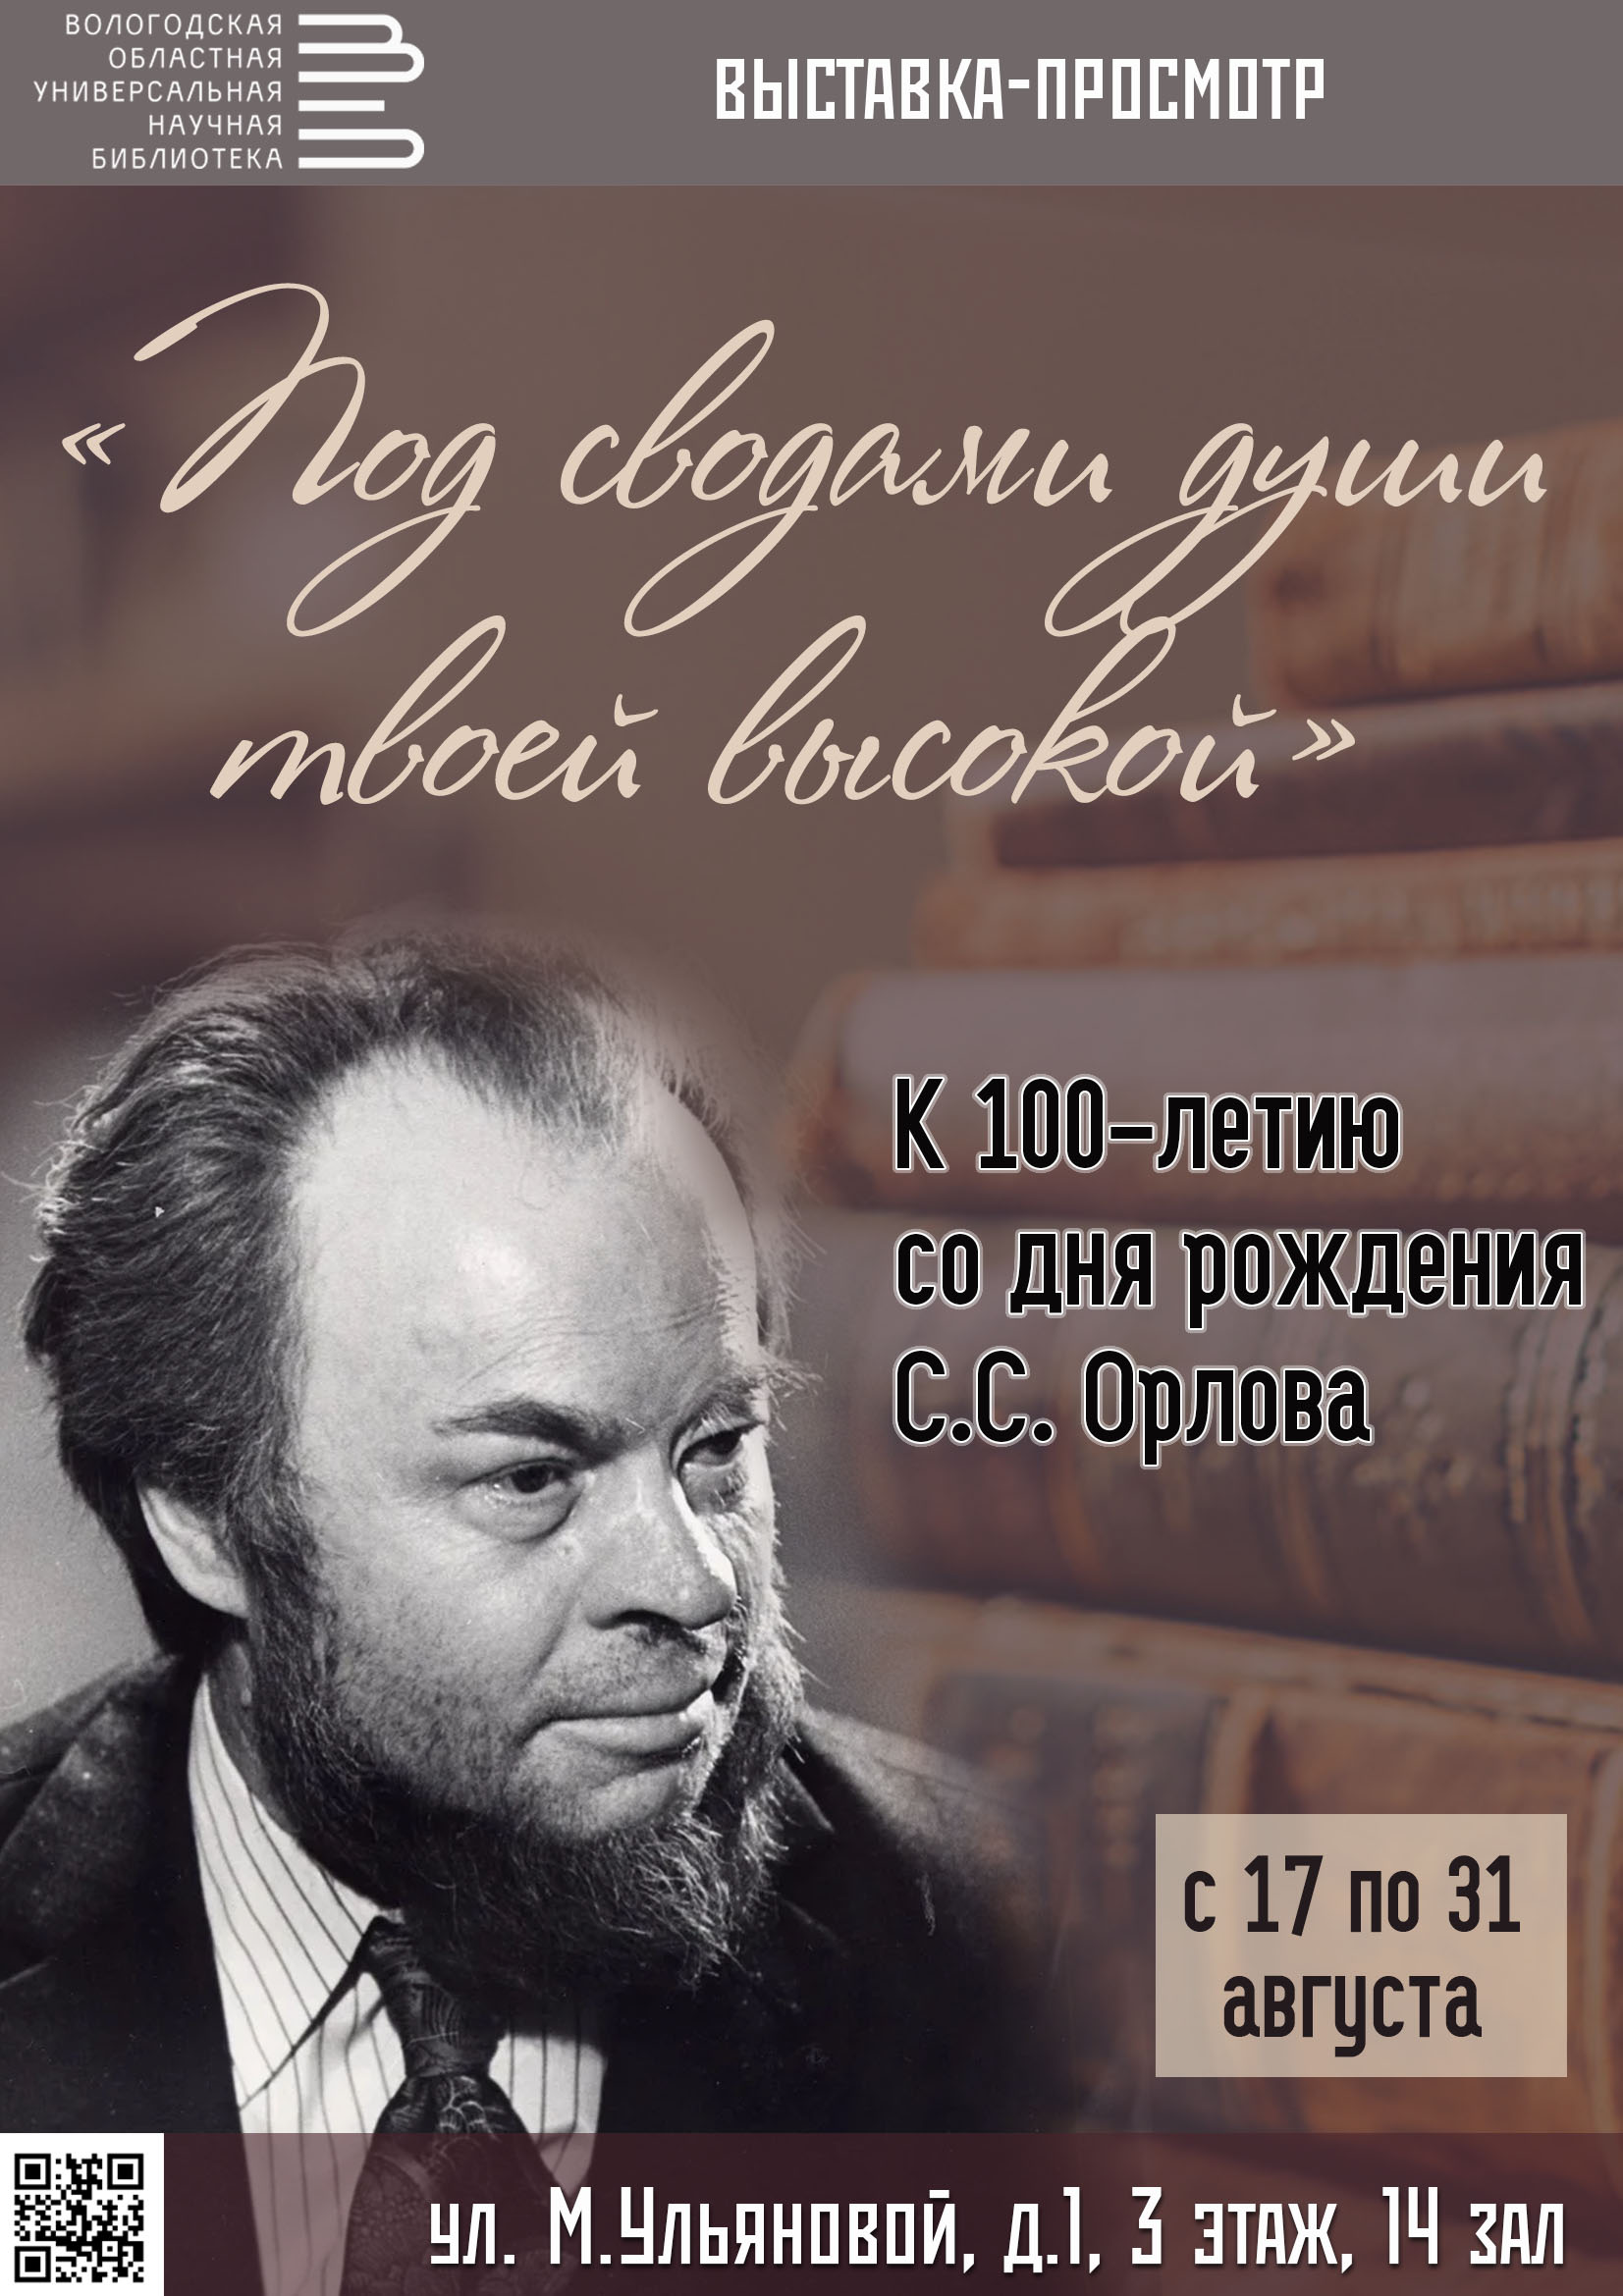 Вологодская библиотека им. И. В. Бабушкина приглашает на выставку, посвященную столетию Сергея Орлова